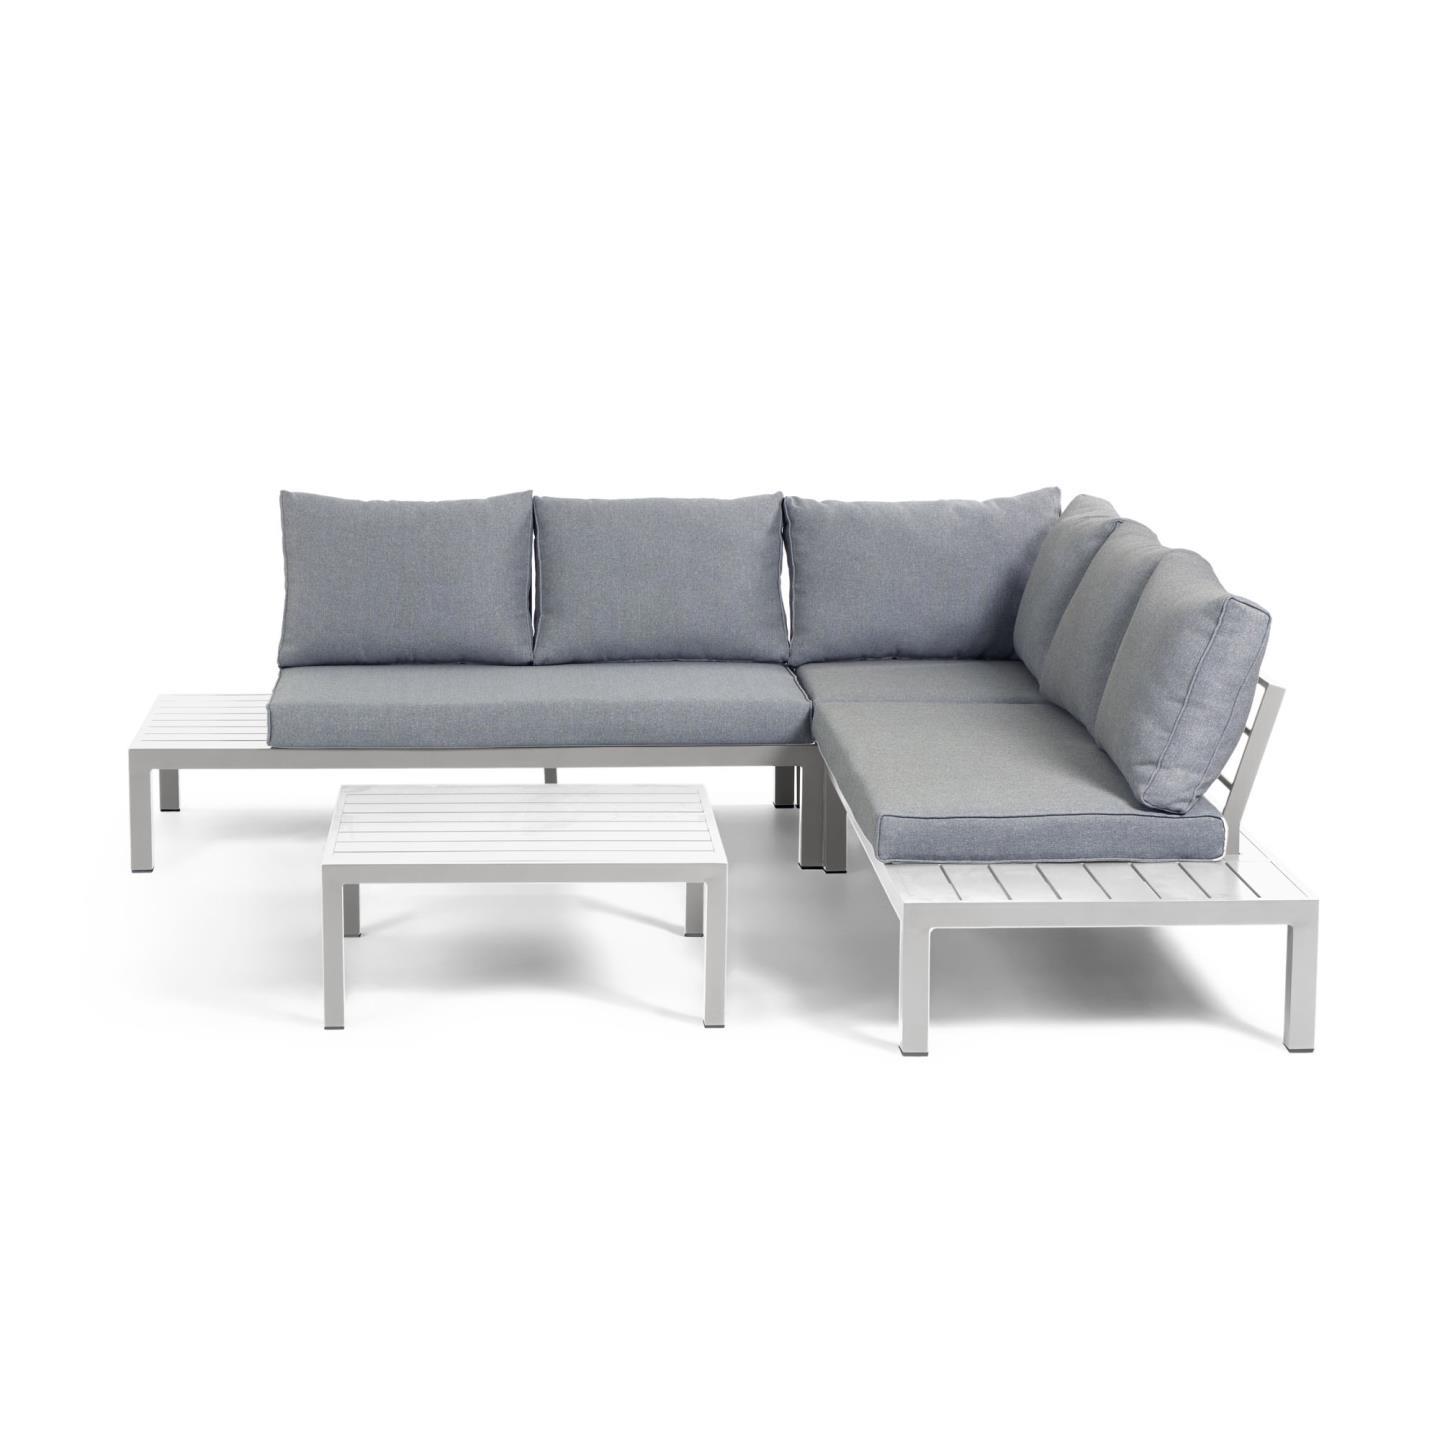 La Forma (ex Julia Grup) Модульный 5-местный угловой диван и стол Duka из белого алюминия